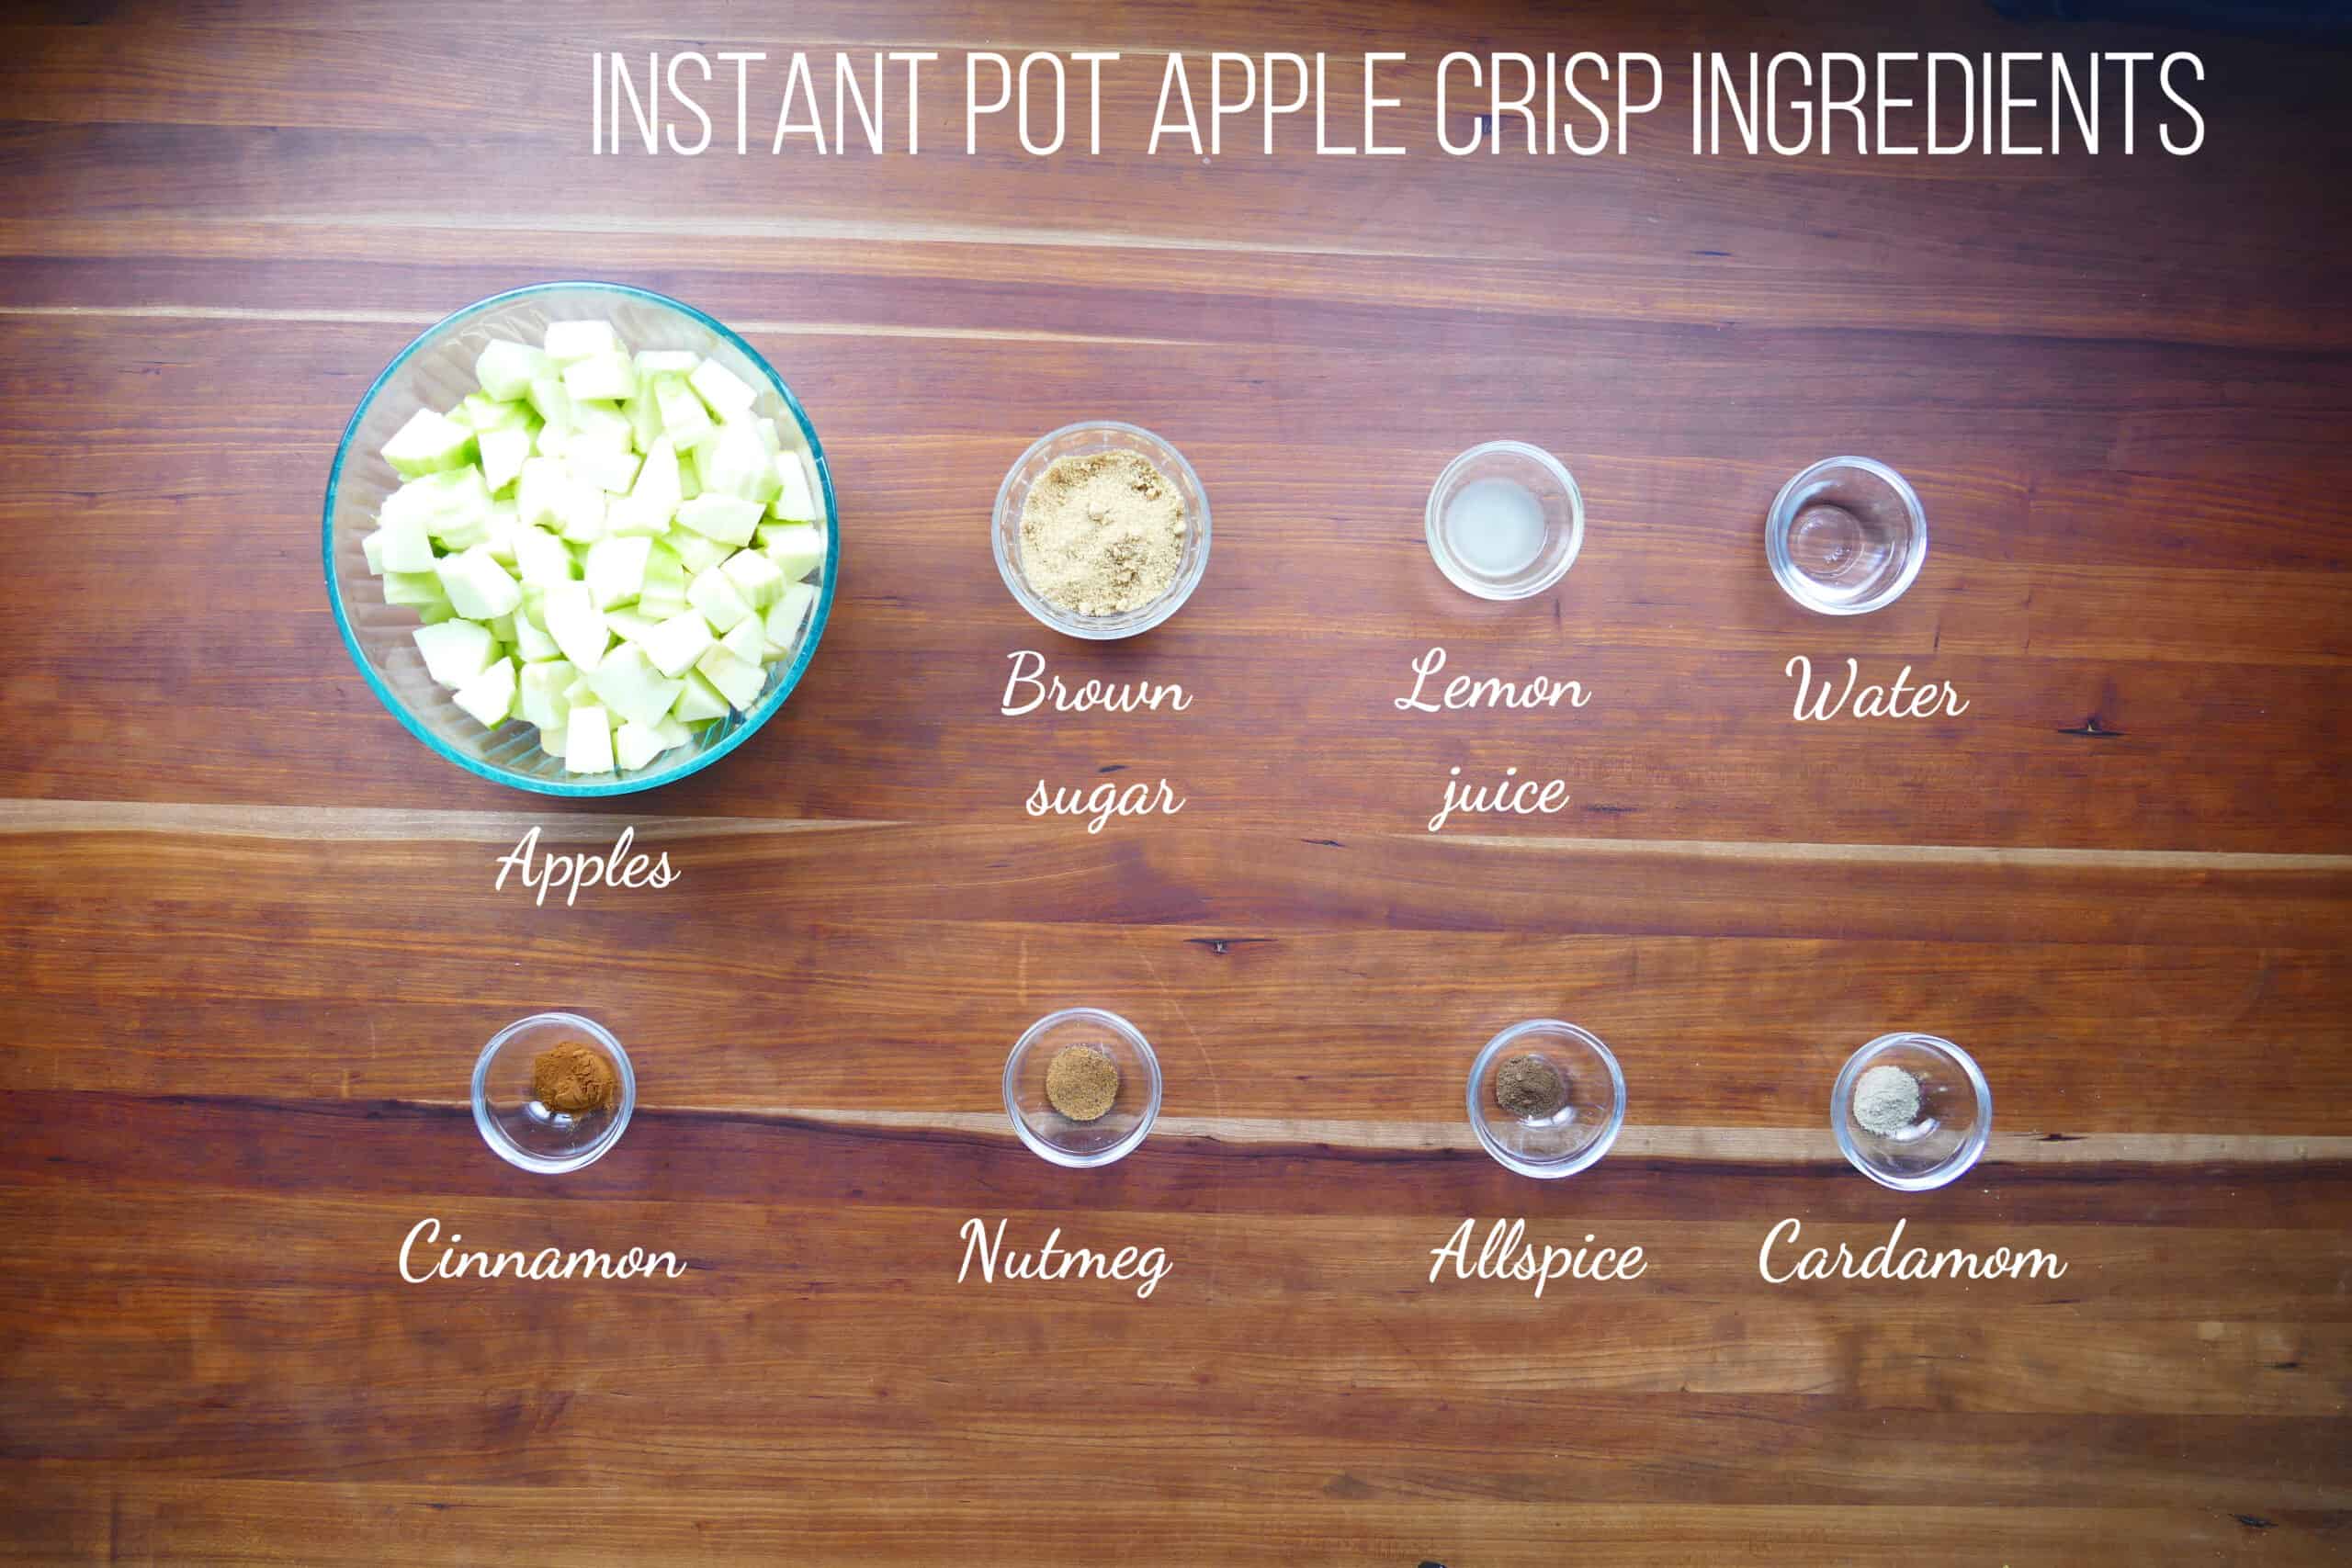 Instant Pot Apple Crisp Ingredients - apples, brown sugar, lemon juice, water, cinnamon, nutmeg, allspice, cardamom